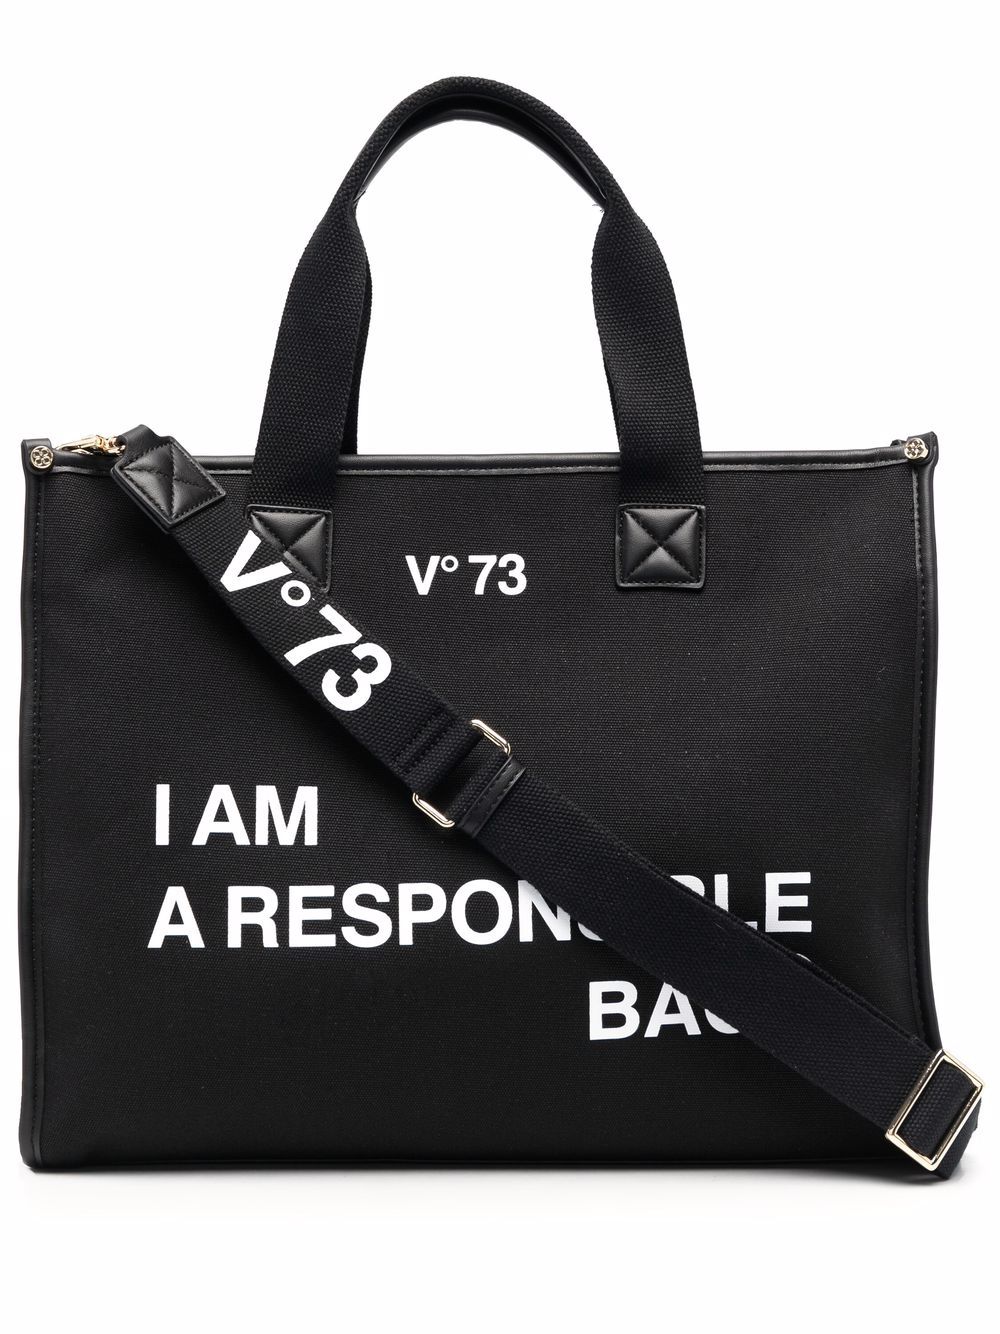 V-73 Responsability Tote Bag In Black | ModeSens